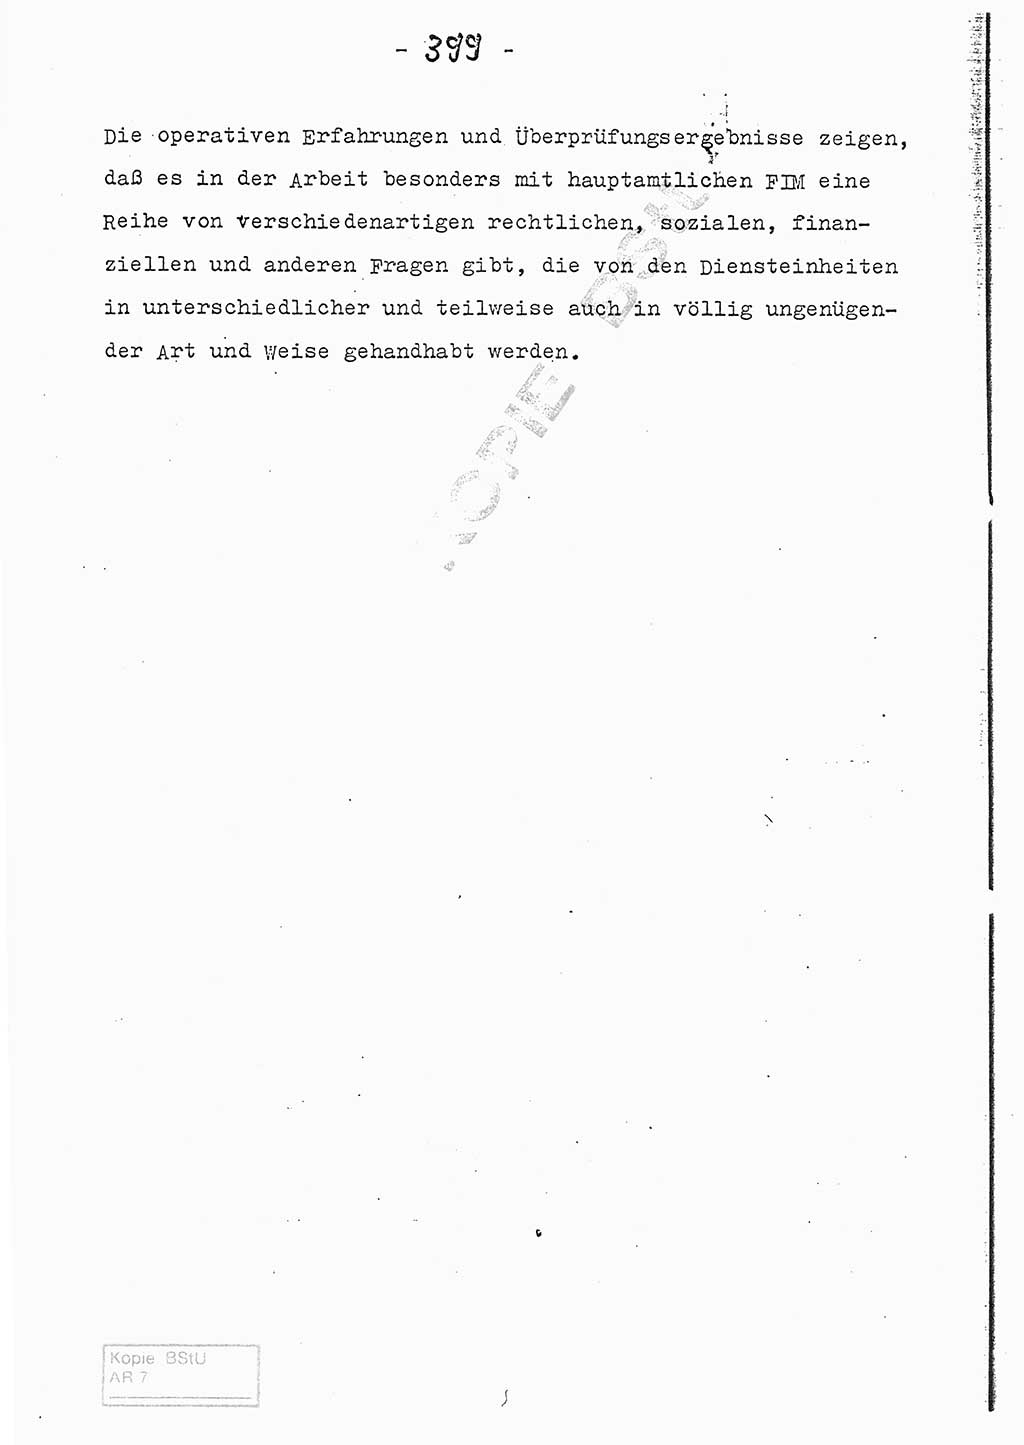 Referat (Entwurf) des Genossen Minister (Generaloberst Erich Mielke) auf der Dienstkonferenz 1972, Ministerium für Staatssicherheit (MfS) [Deutsche Demokratische Republik (DDR)], Der Minister, Geheime Verschlußsache (GVS) 008-150/72, Berlin 25.2.1972, Seite 399 (Ref. Entw. DK MfS DDR Min. GVS 008-150/72 1972, S. 399)